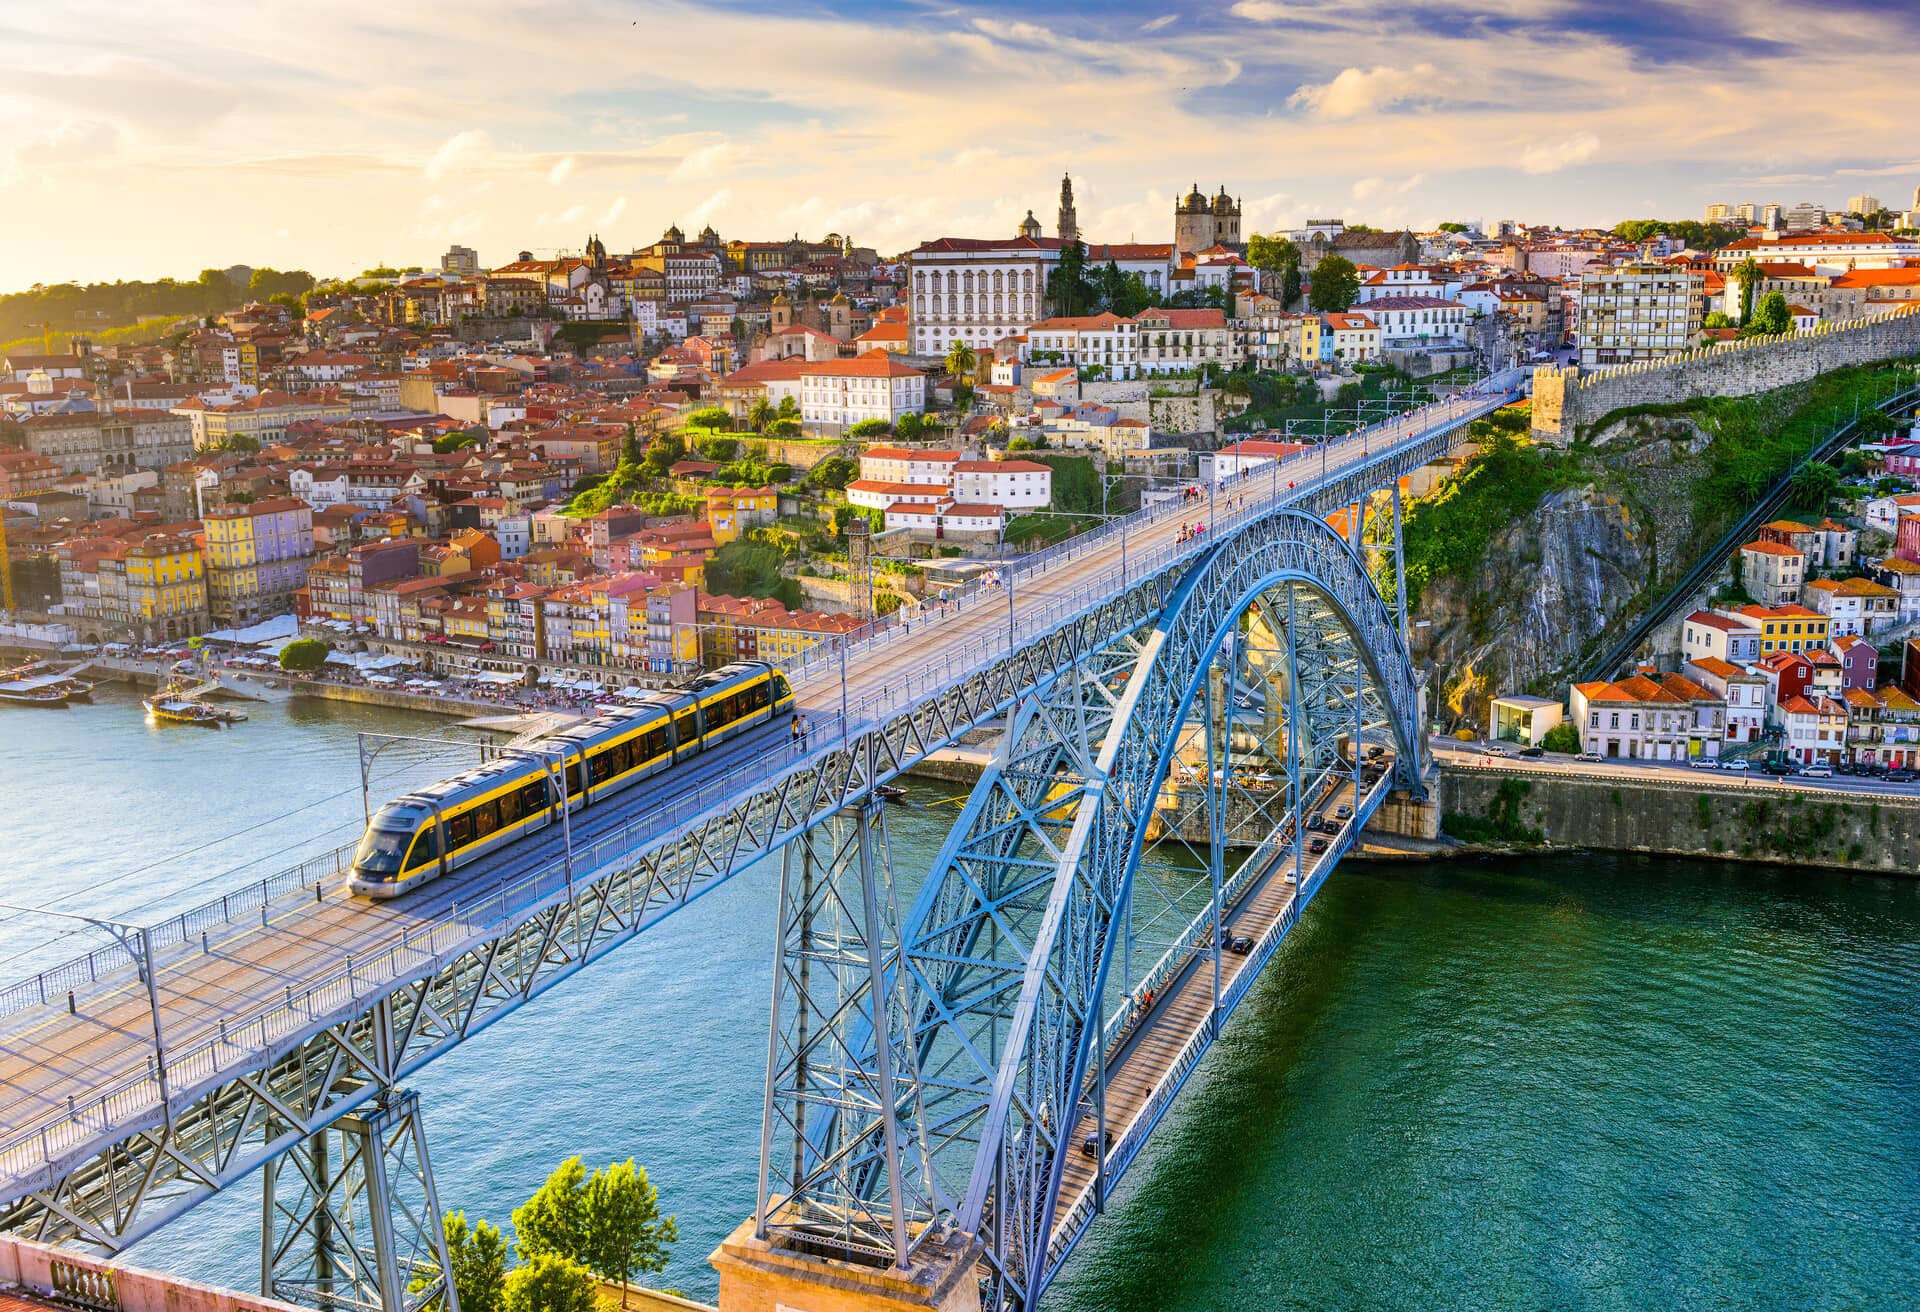 Il paesaggio urbano portoghese lungo il fiume Douro e sul ponte Dom Luis I.